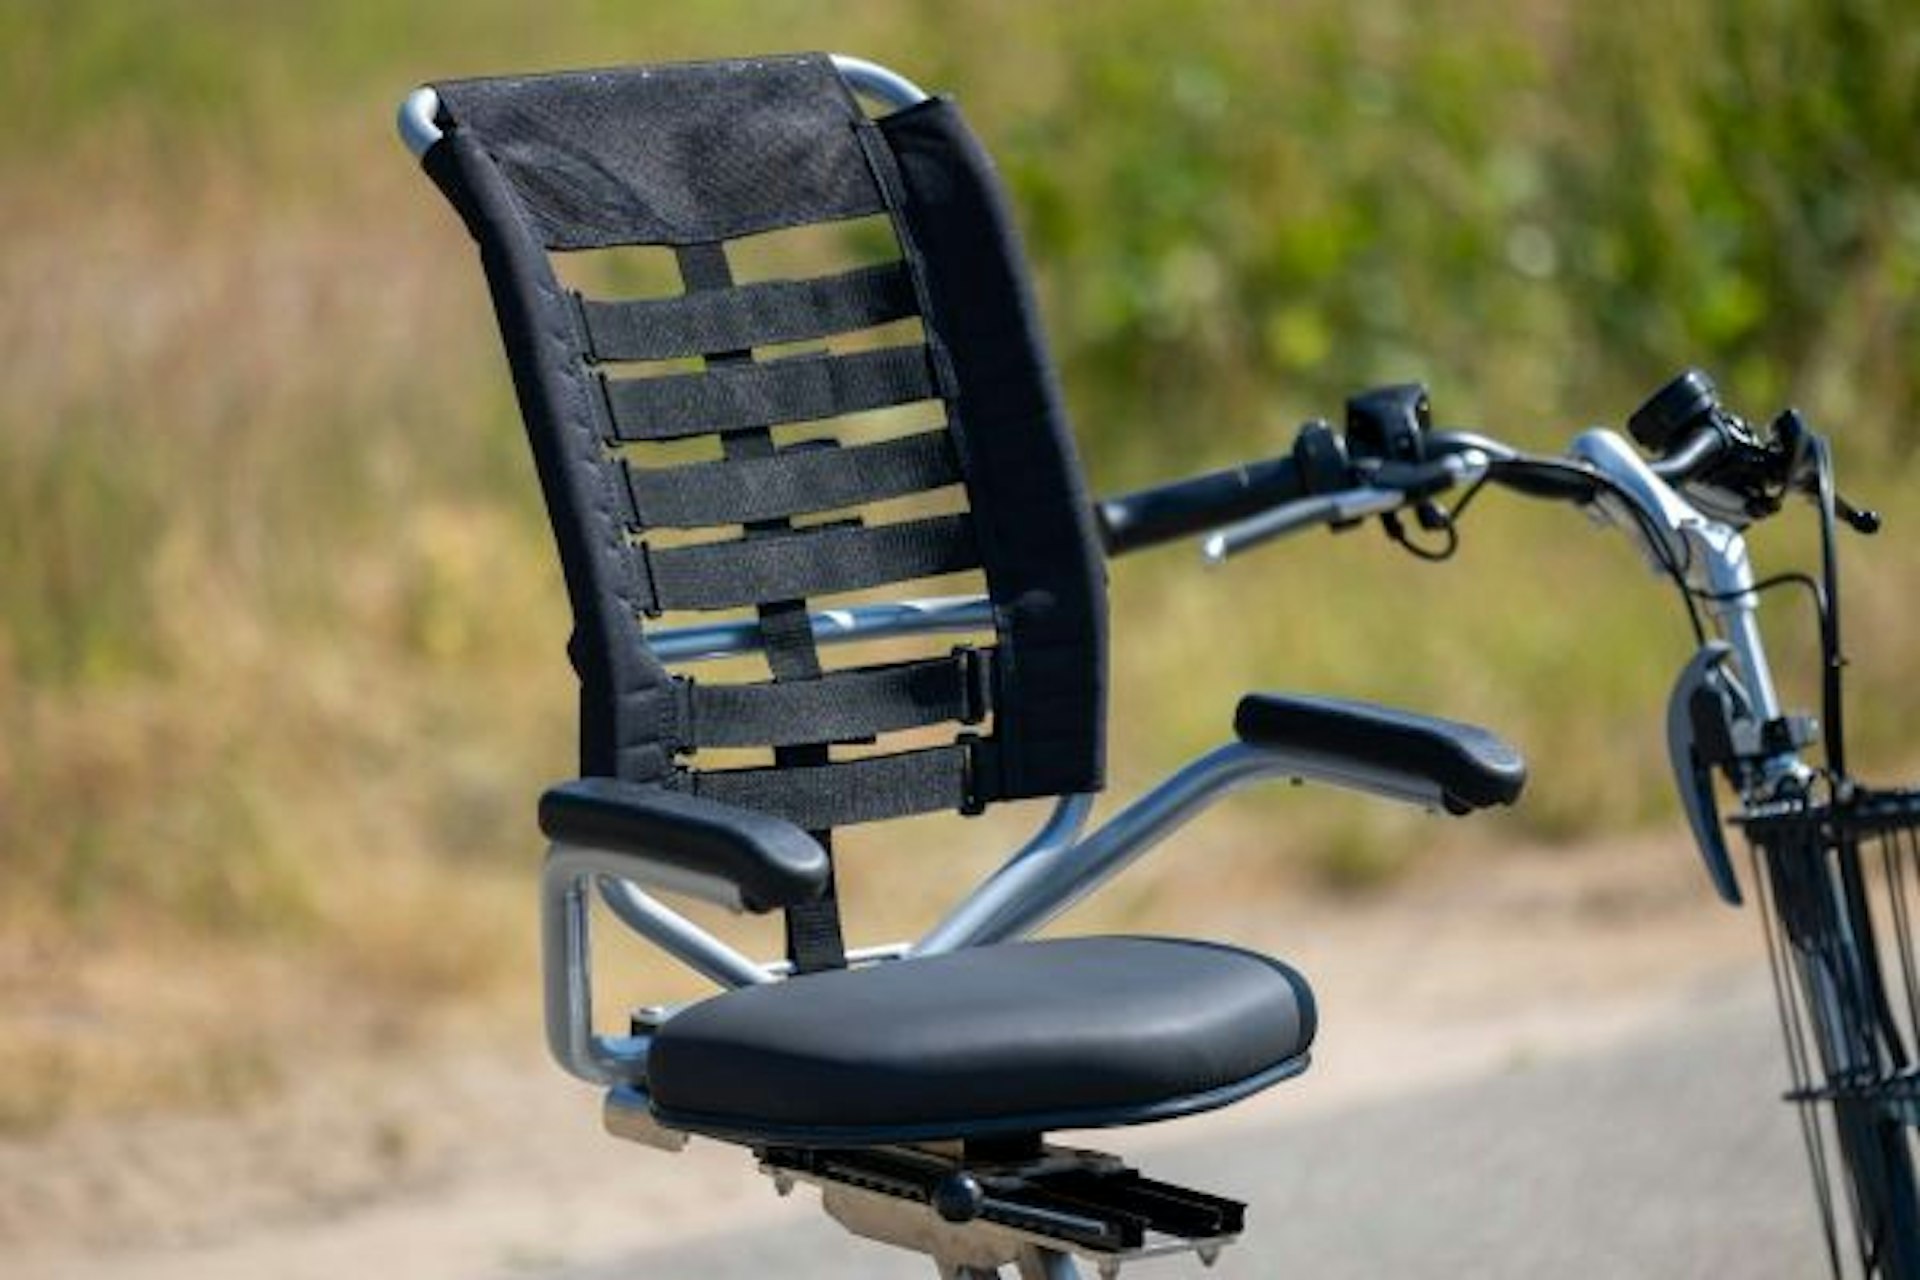 Comfort seat for Van Raam special needs bike